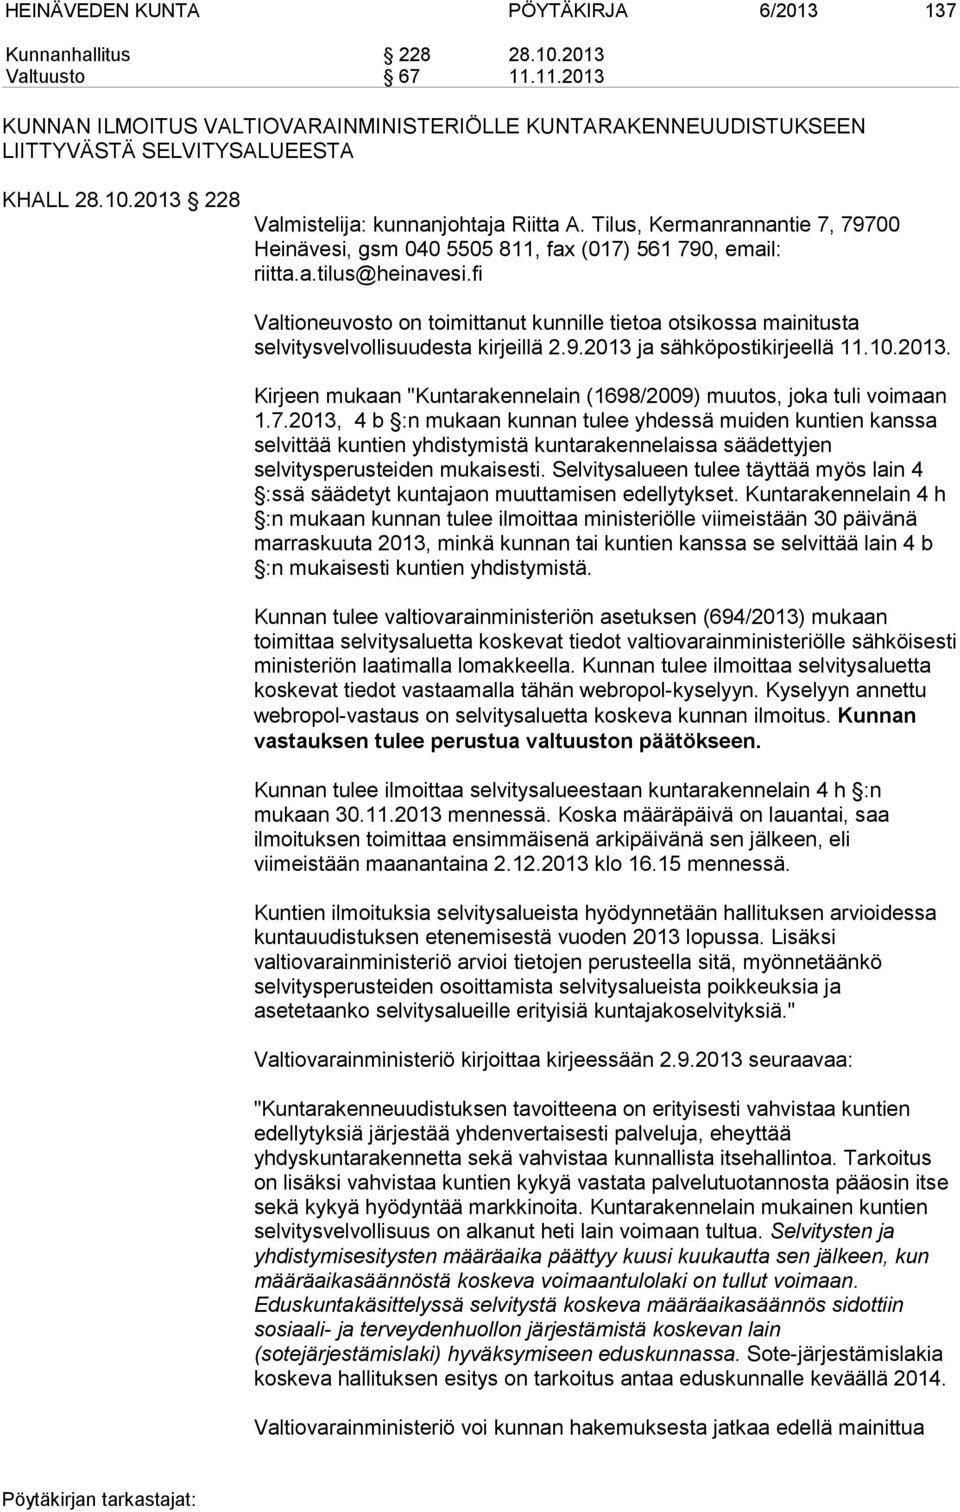 fi Valtioneuvosto on toimittanut kunnille tietoa otsikossa mainitusta selvitysvelvollisuudesta kirjeillä 2.9.2013 ja sähköpostikirjeellä 11.10.2013. Kirjeen mukaan "Kuntarakennelain (1698/2009) muutos, joka tuli voimaan 1.